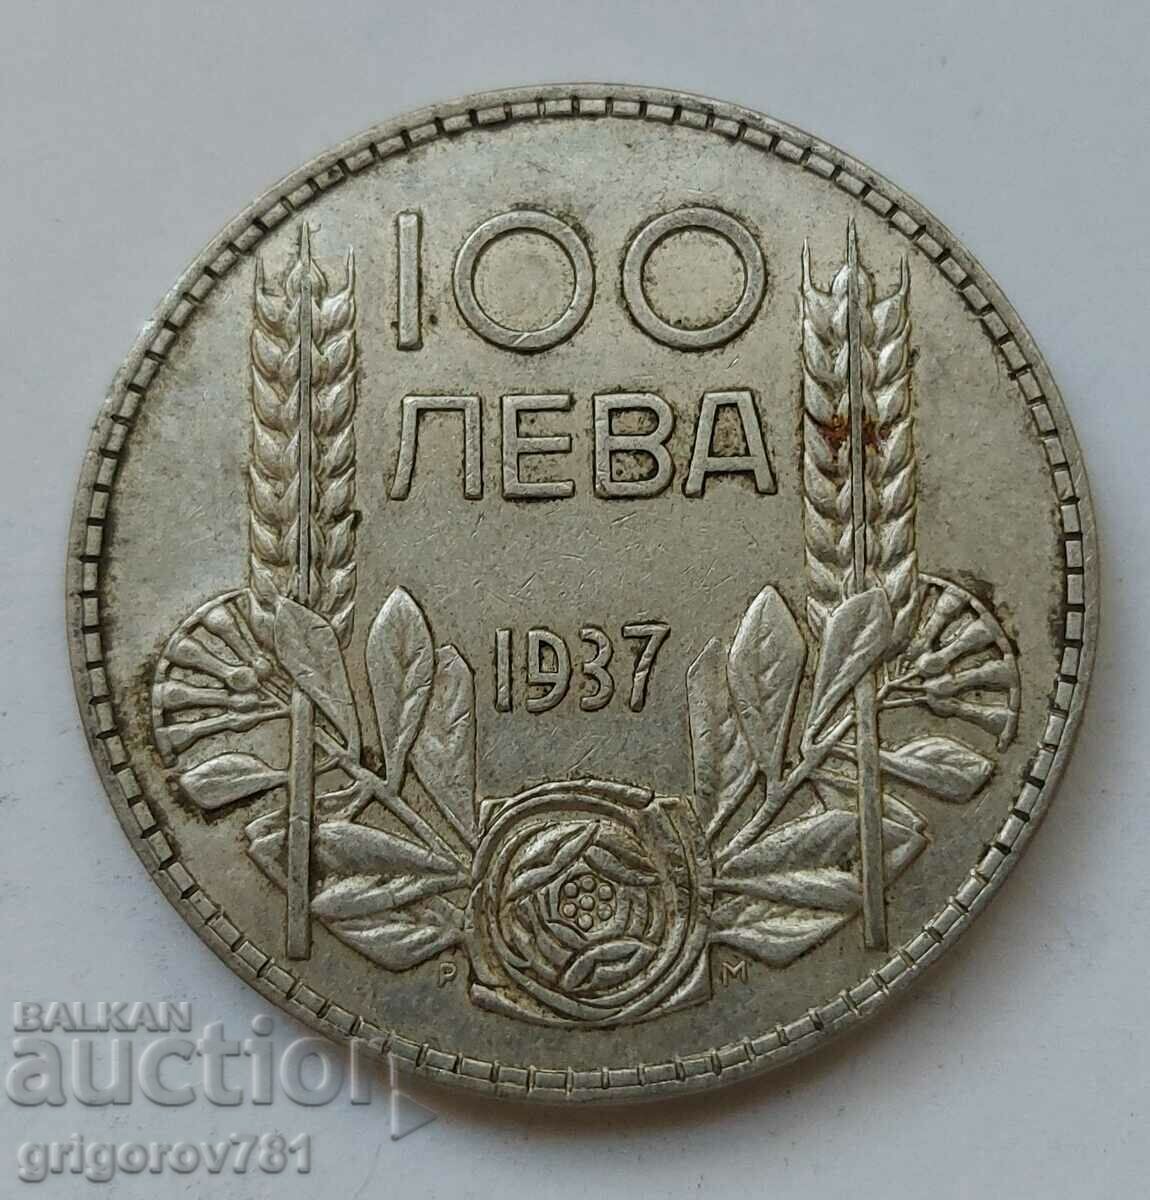 100 leva silver Bulgaria 1937 - silver coin #111